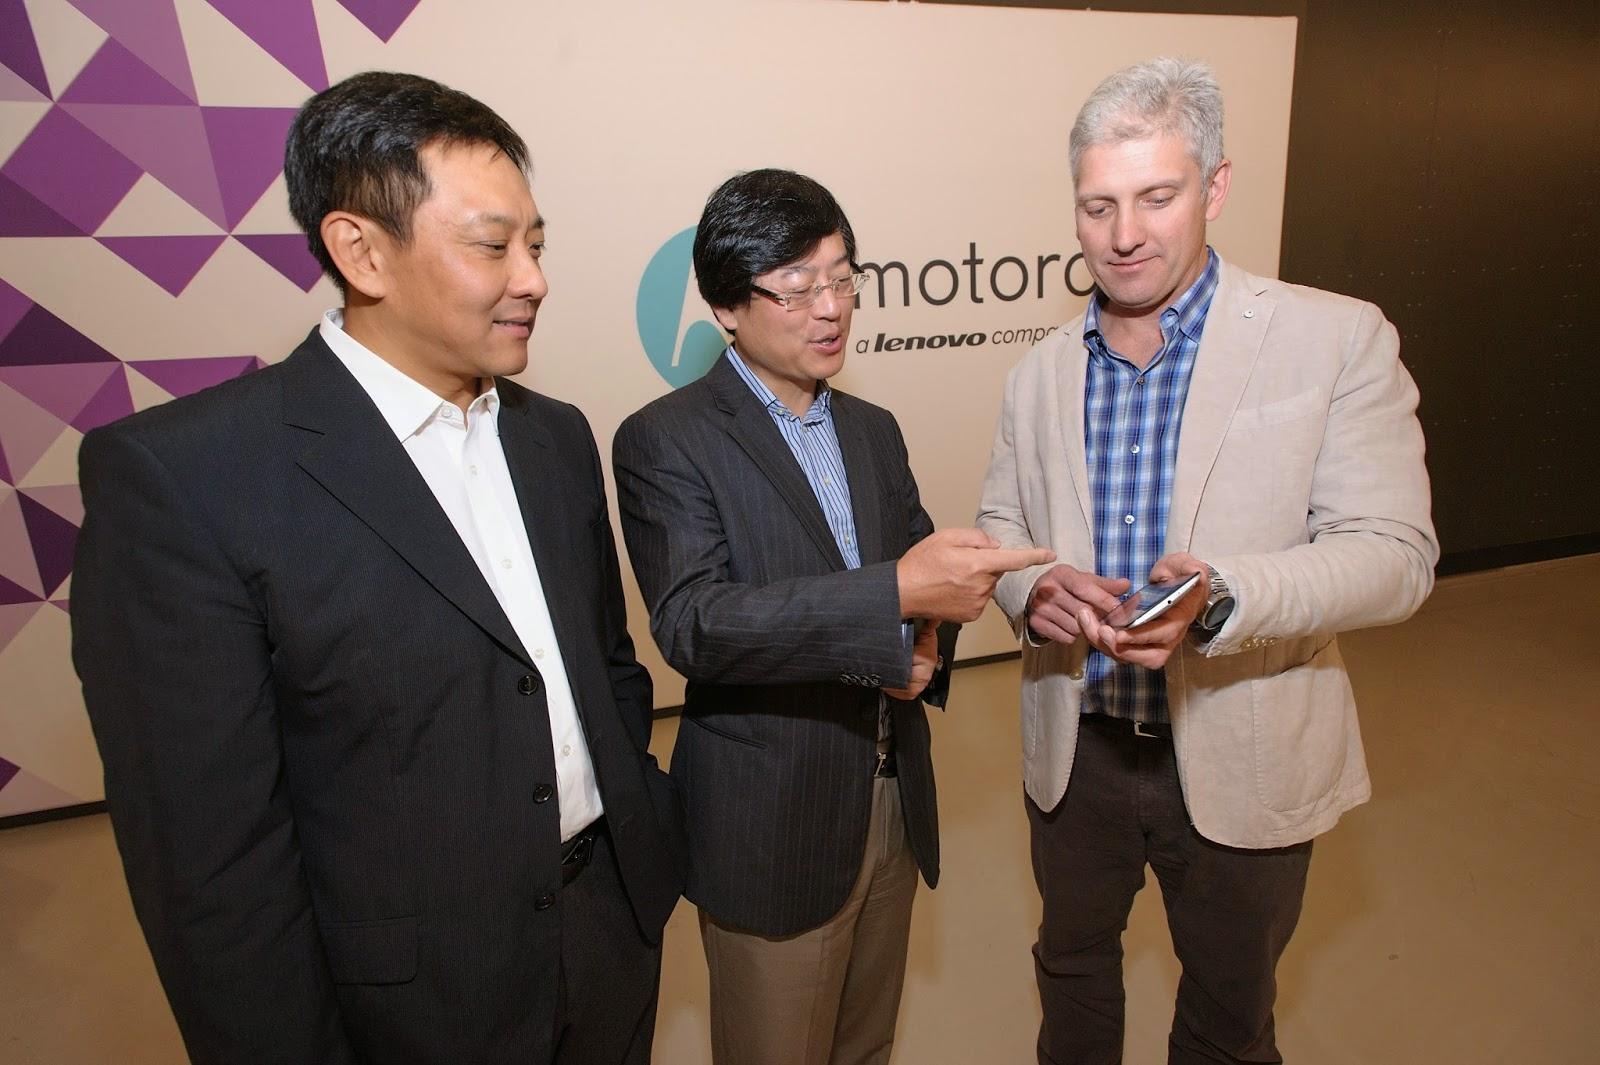 MONDE / ÉCONOMIE > Lenovo® rachète Motorola au géant internet Google